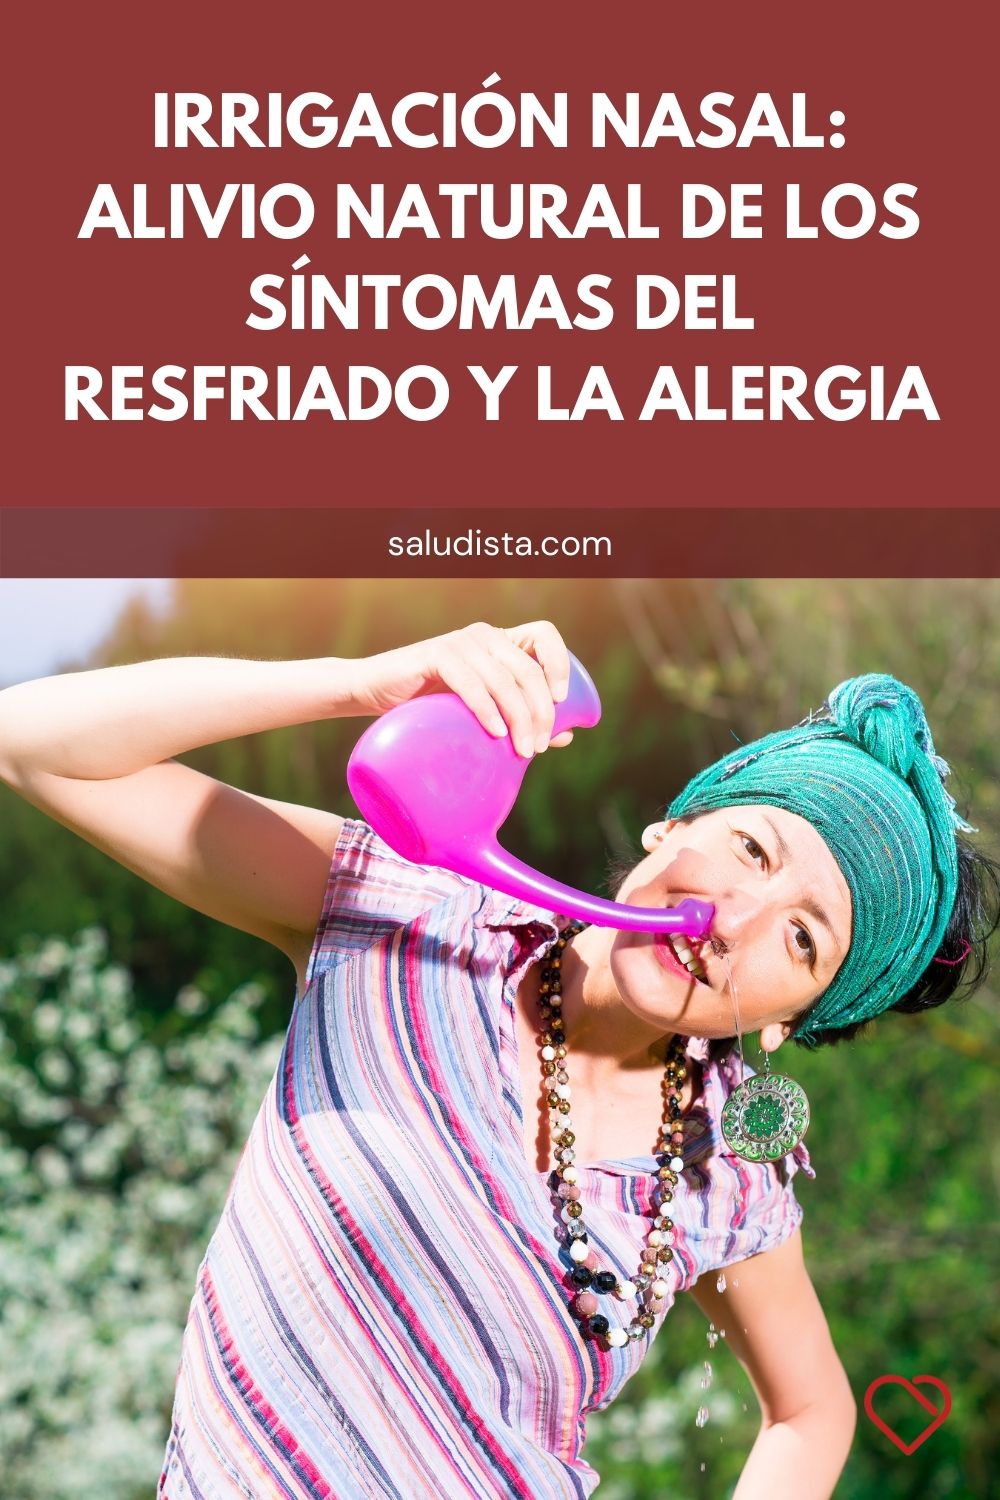 Irrigación nasal: Alivio natural de los síntomas del resfriado y la alergia